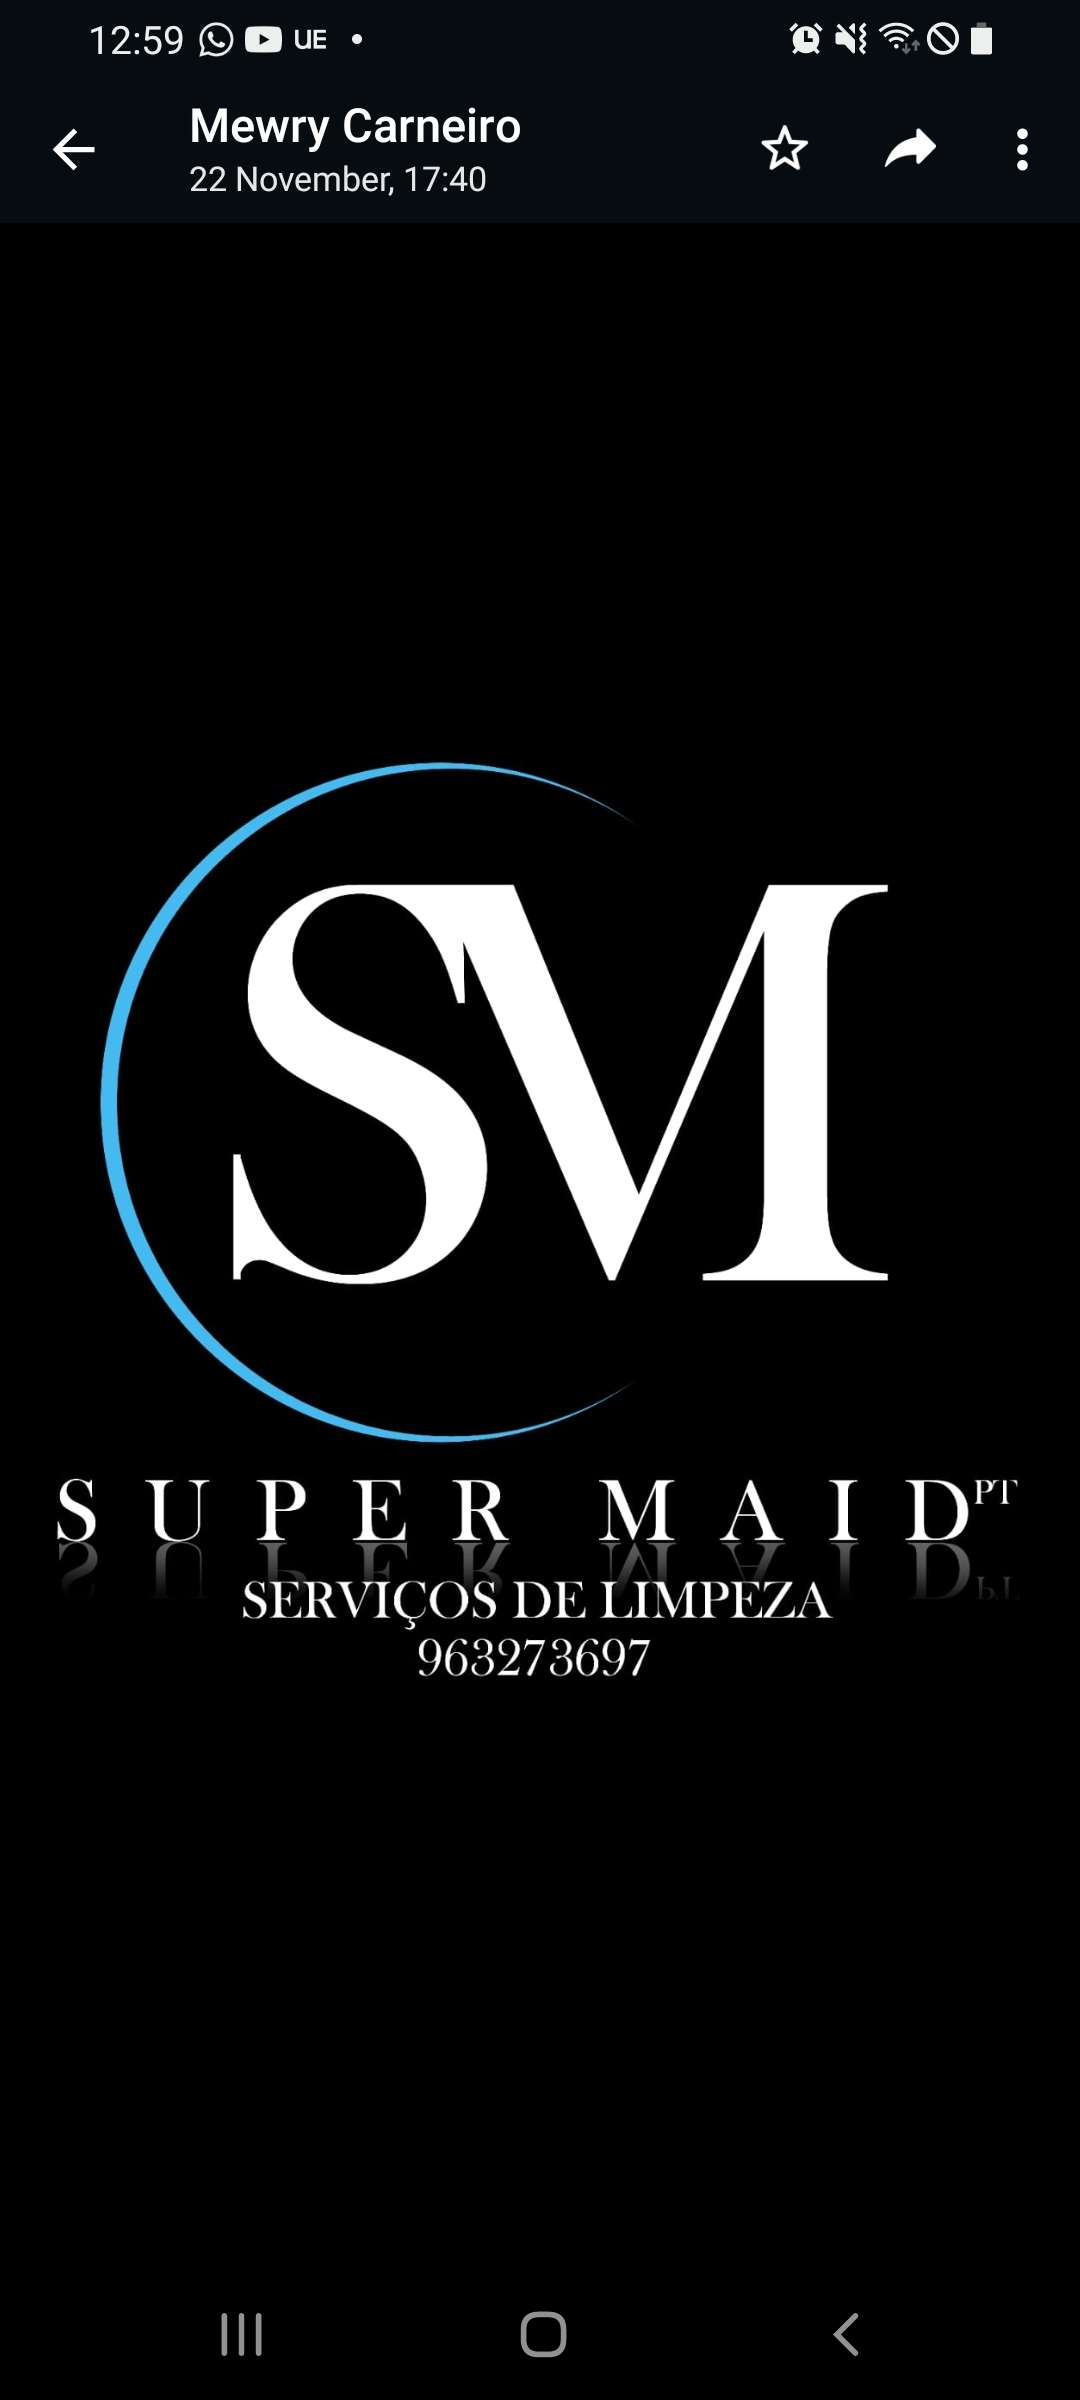 SUPER MAID PT - Vila Franca de Xira - Limpeza de Persianas